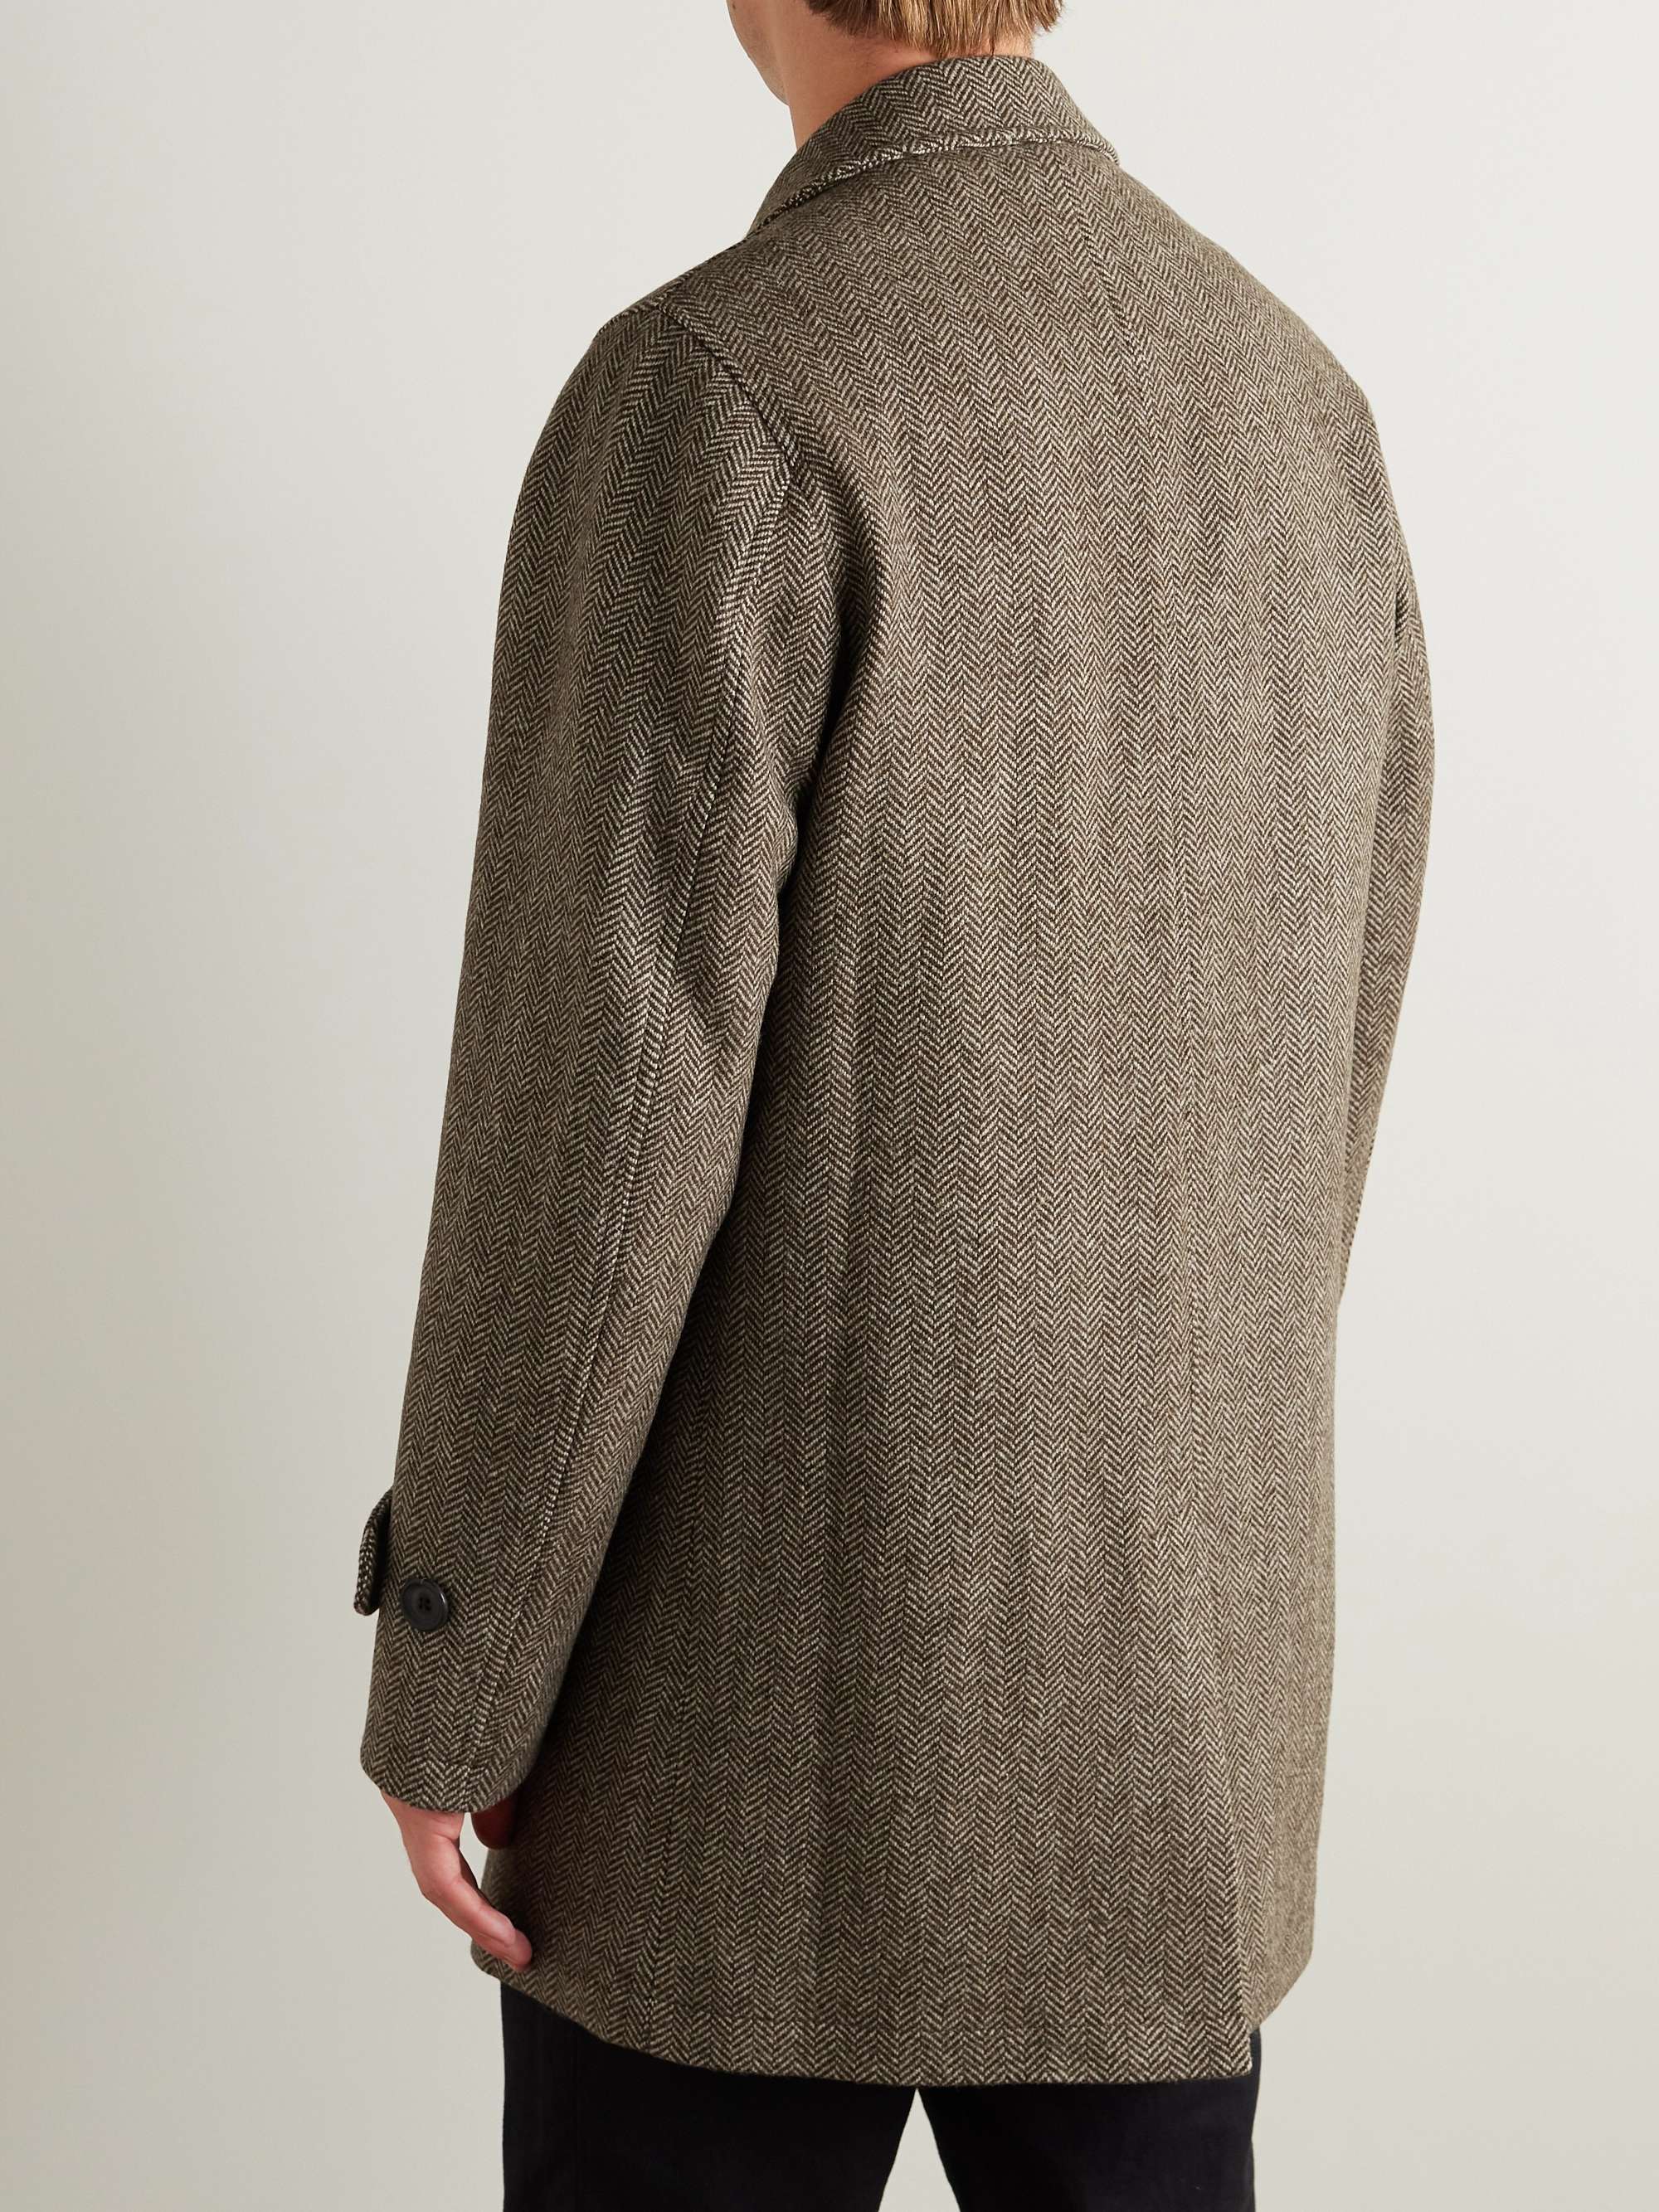 OLIVER SPENCER Albion Herringbone Wool Coat for Men | MR PORTER